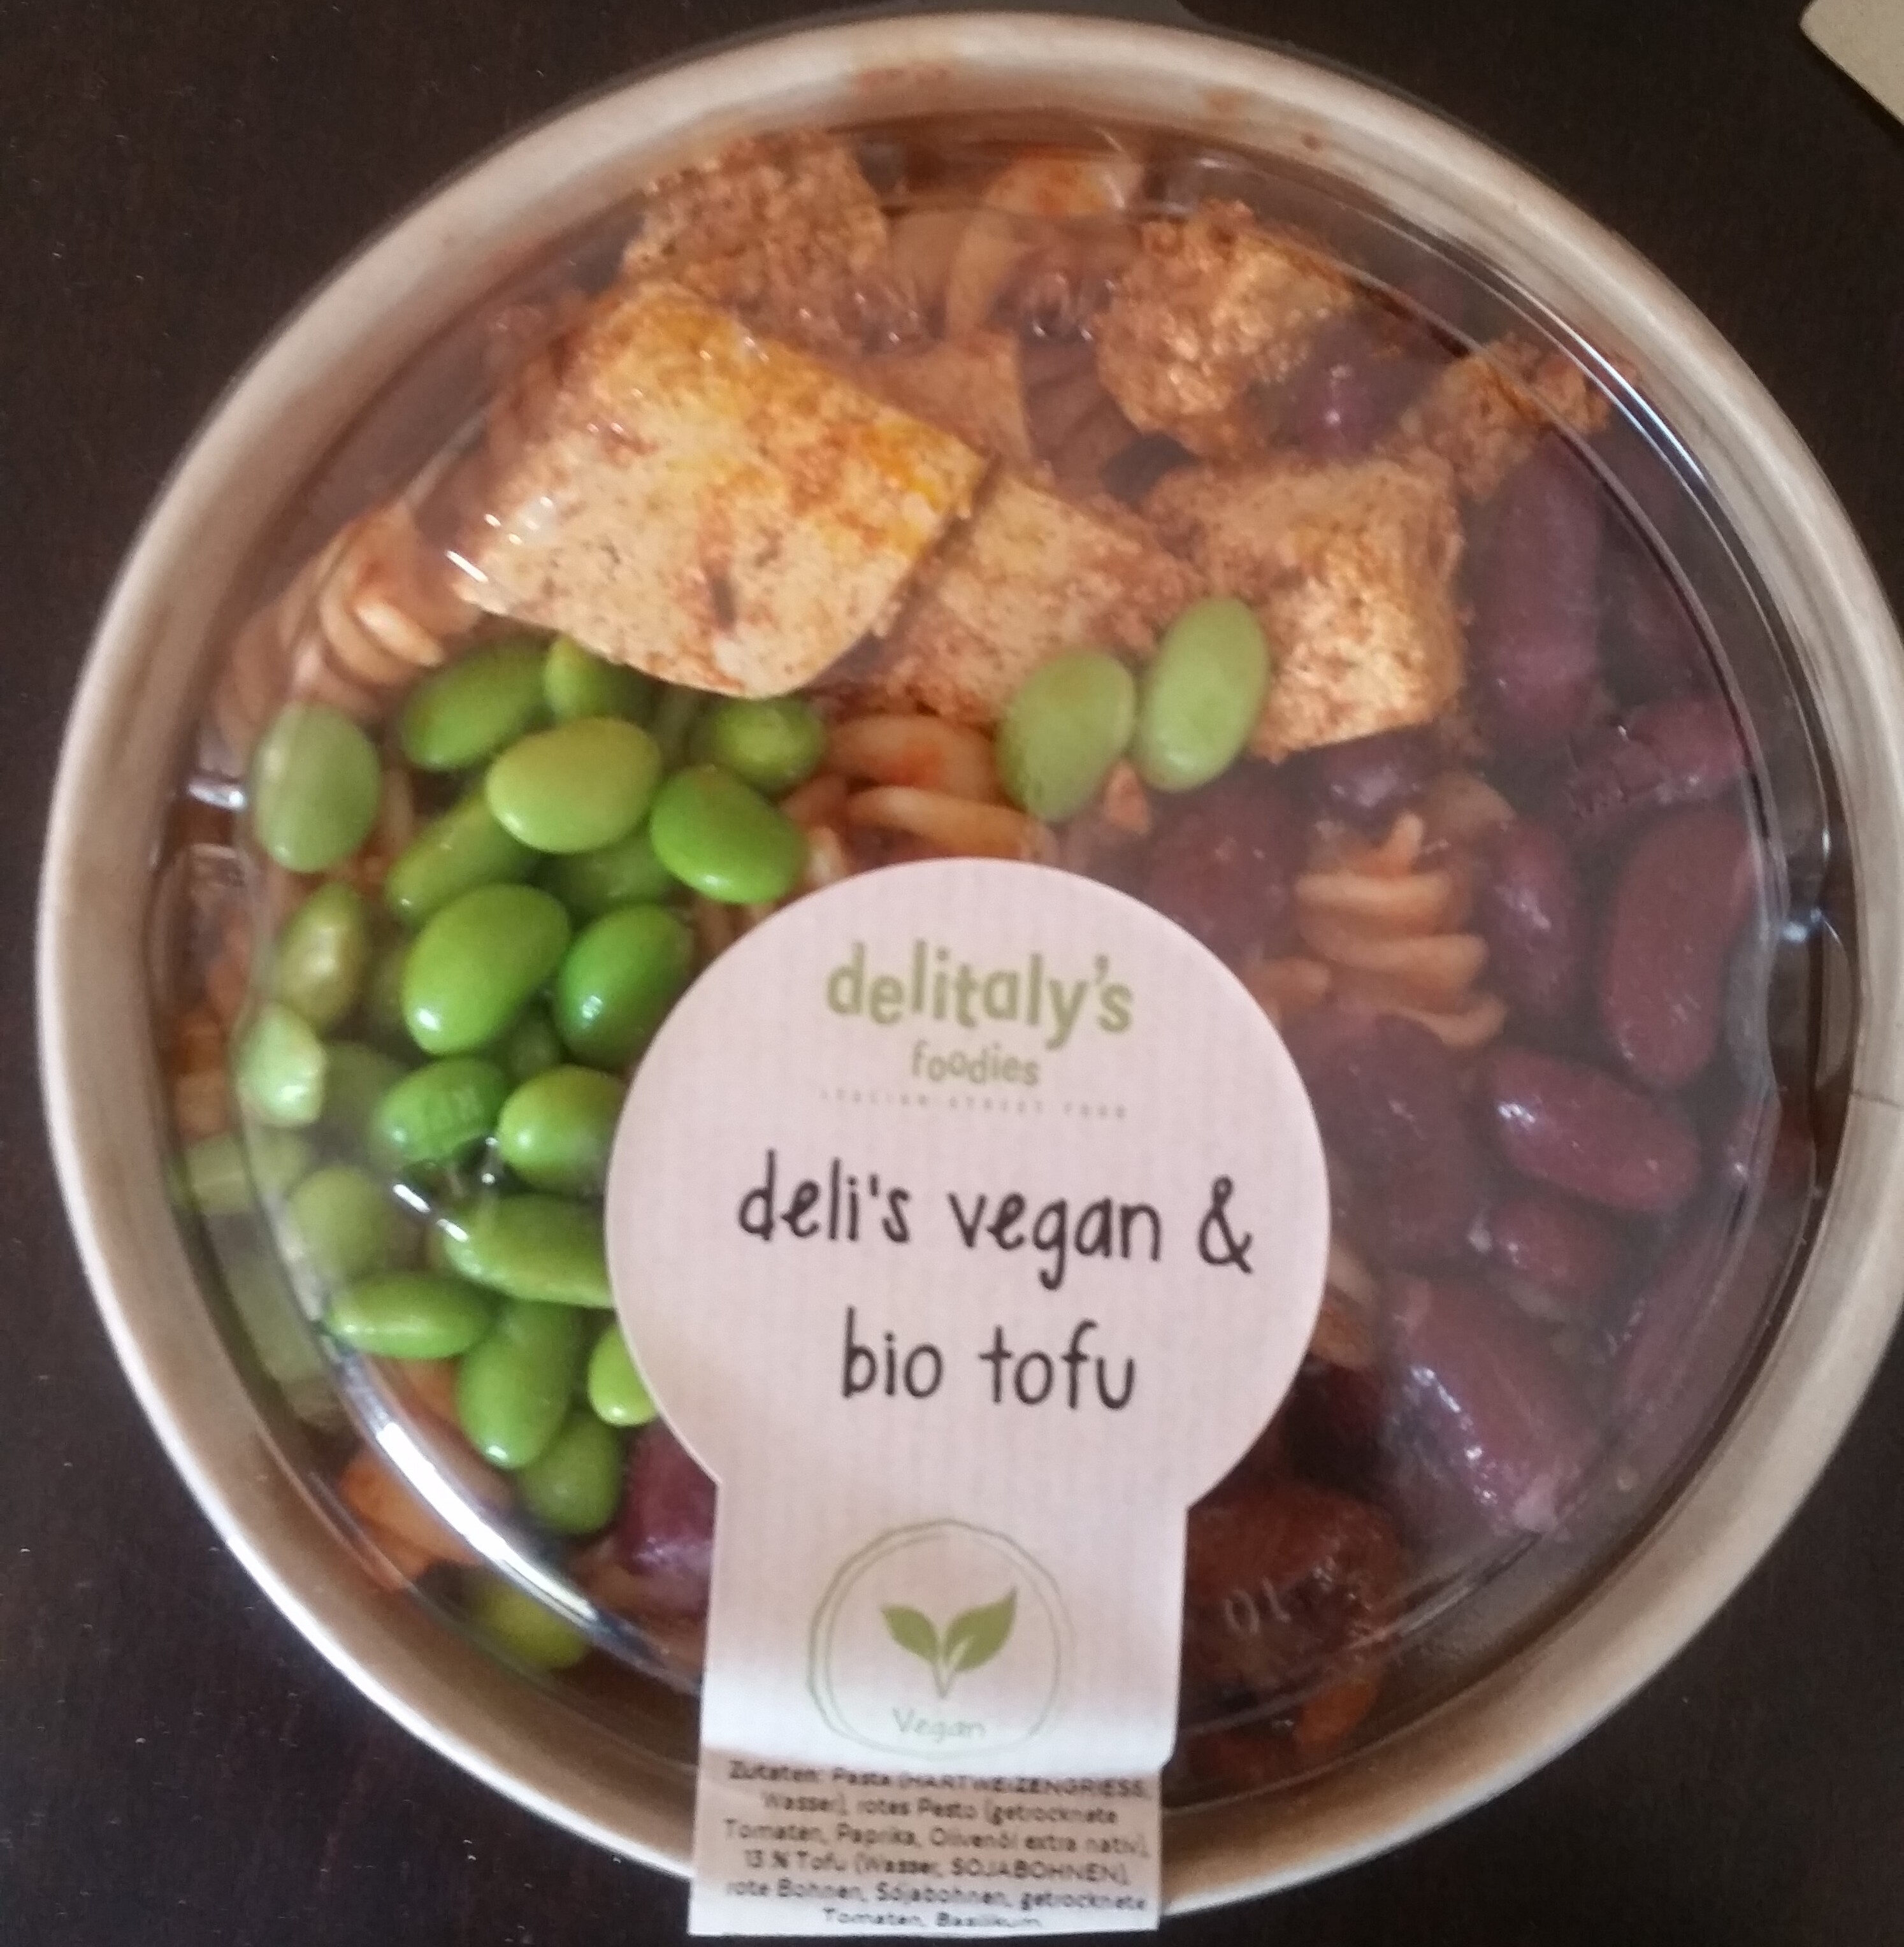 Deli's Vegan & Bio Tofu - Product